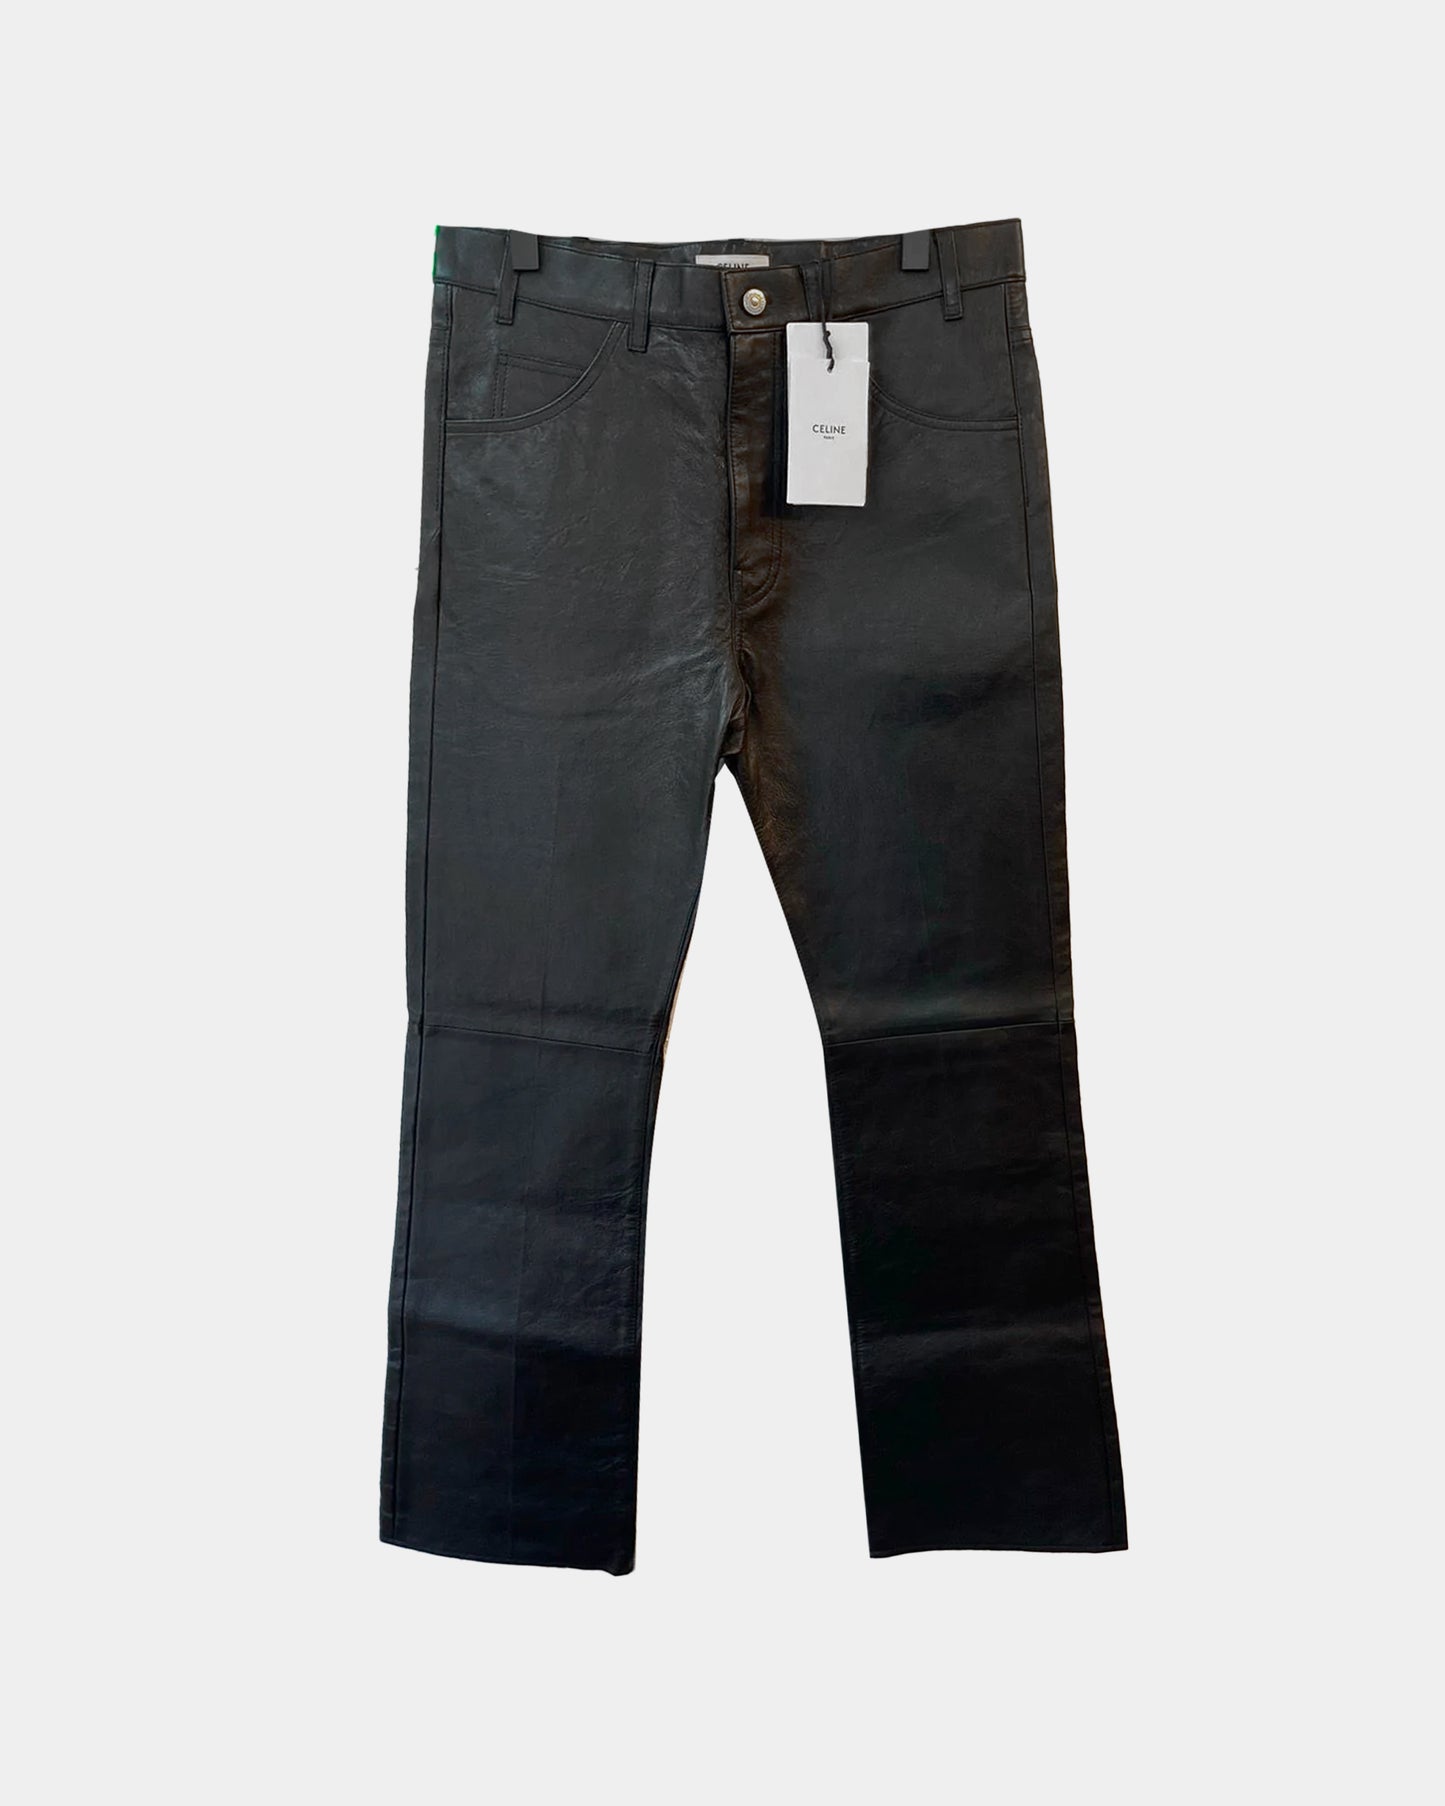 Celine NEW SZ 32 LEATHER Jeans Pants